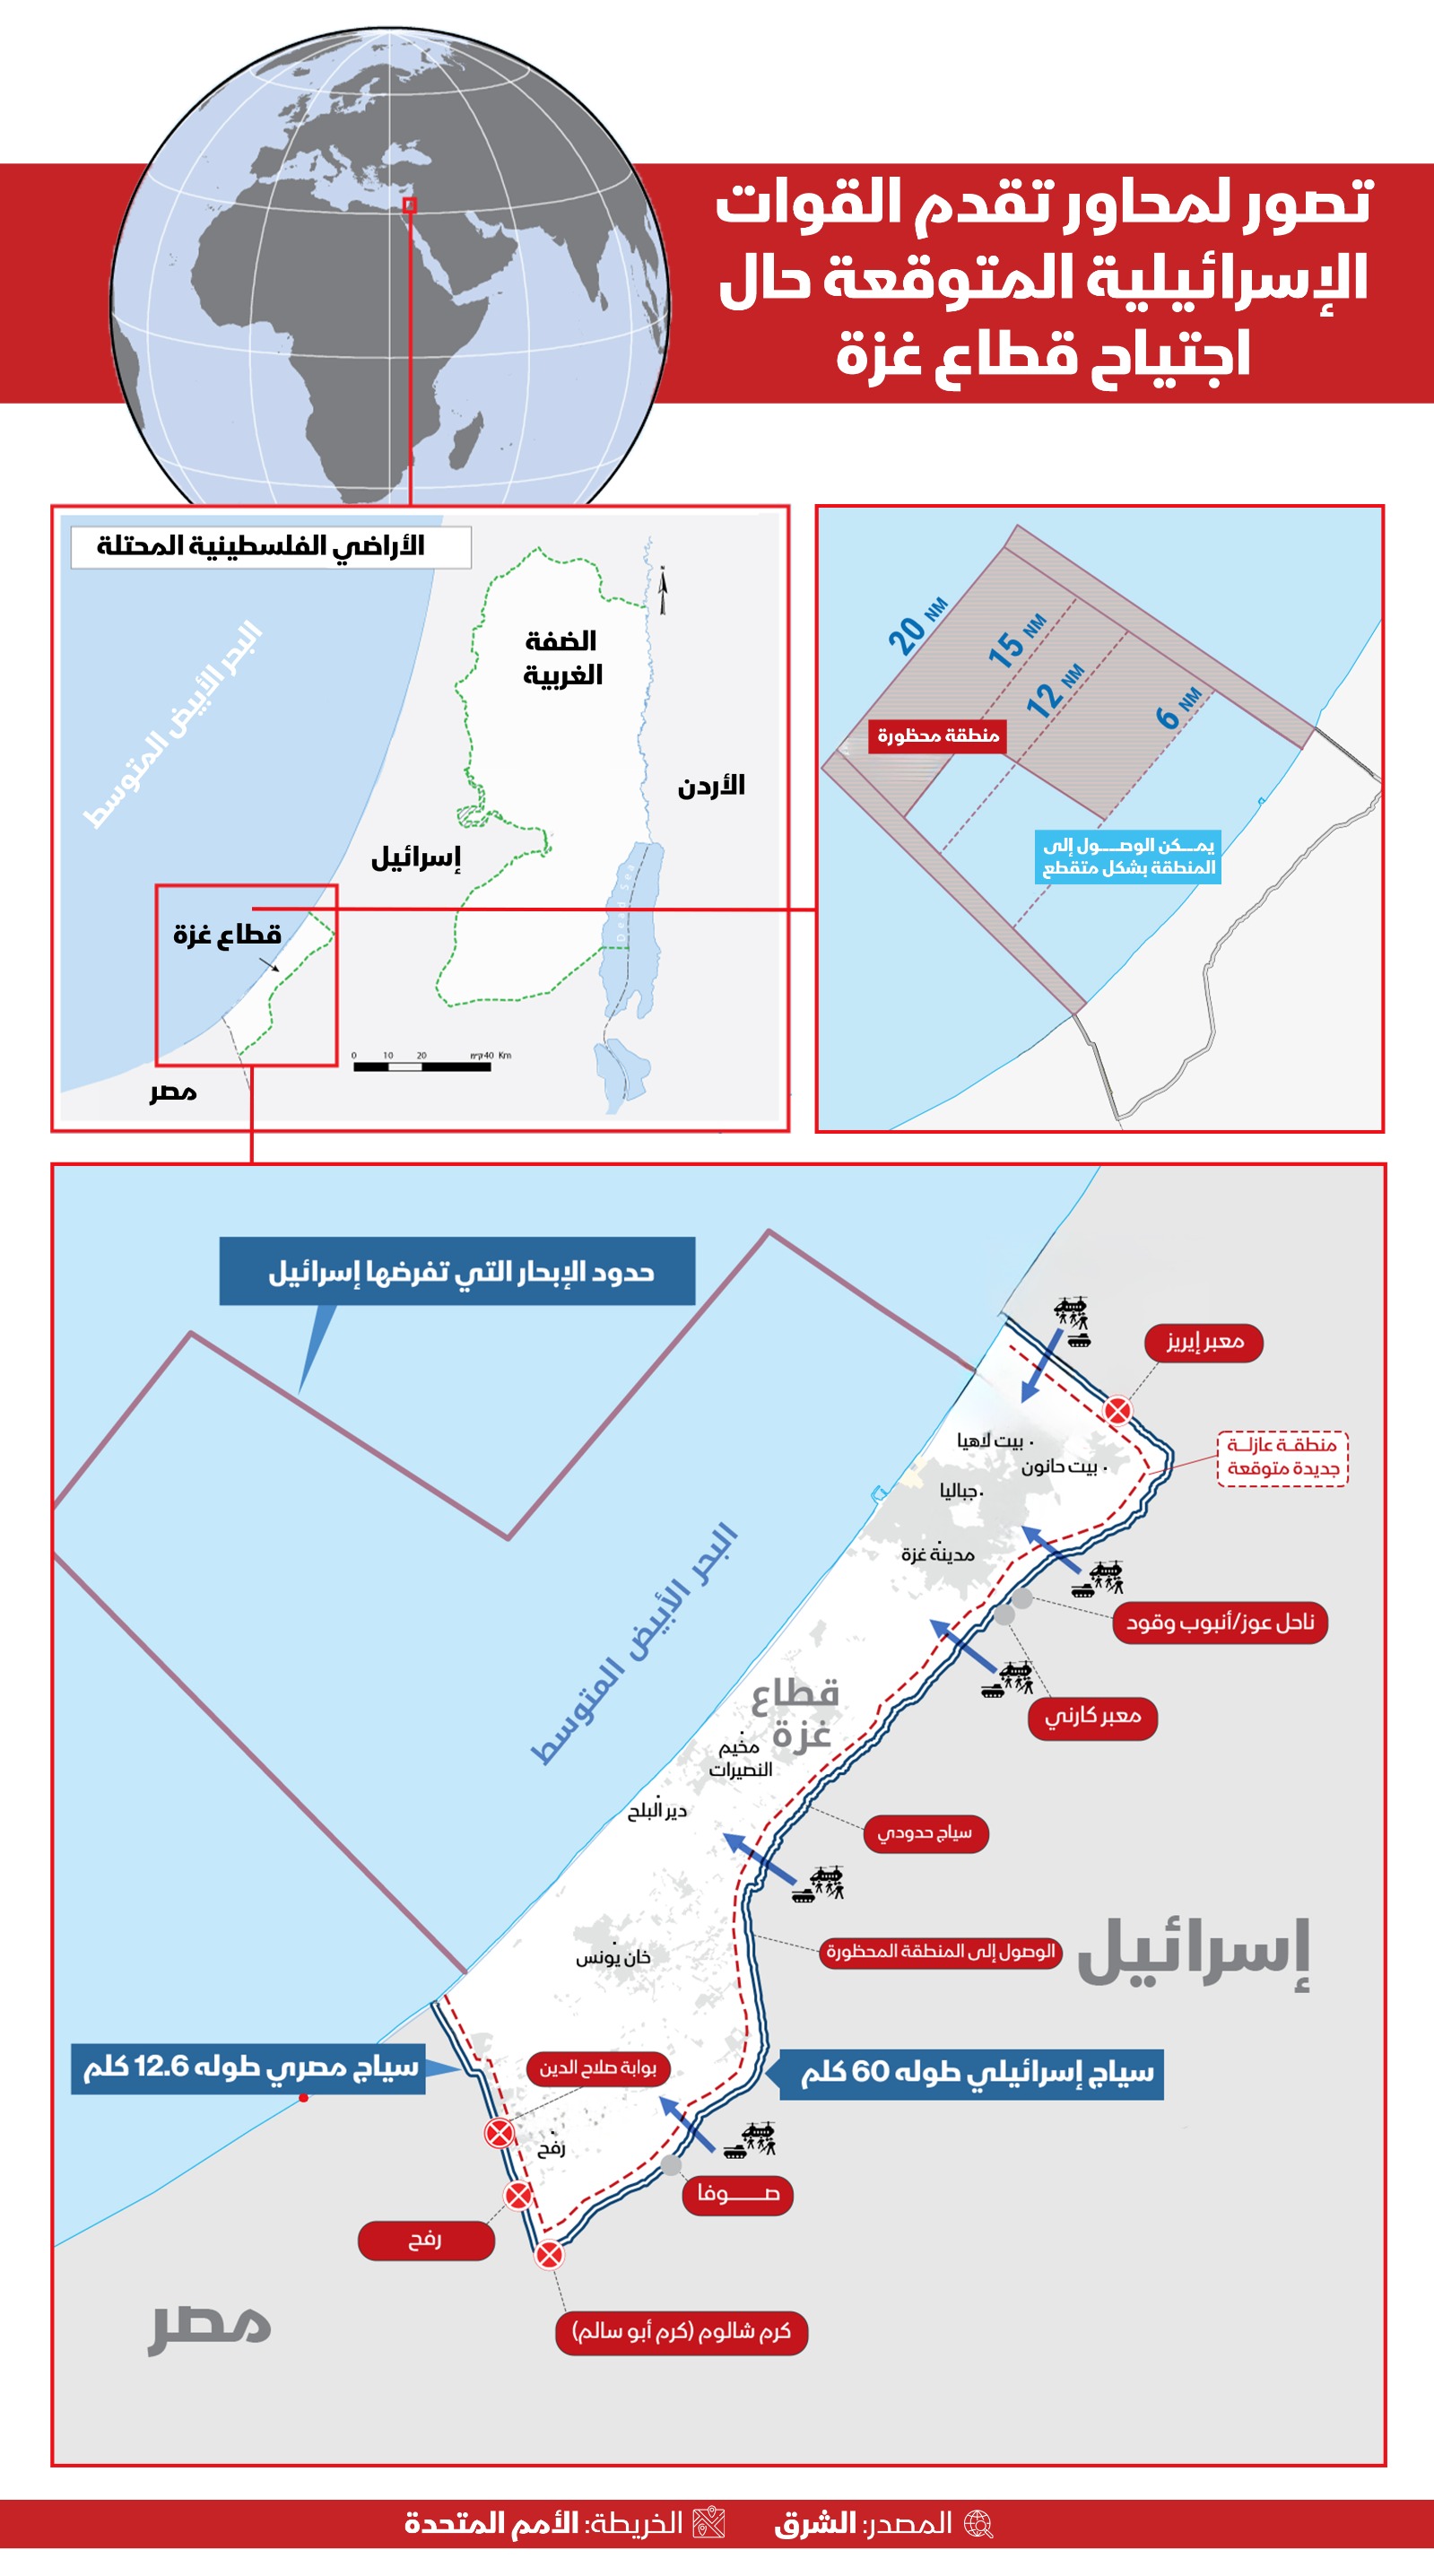 خريطة توضح مراحل العمليات الإسرائيلية المتوقعة في قطاع غزة